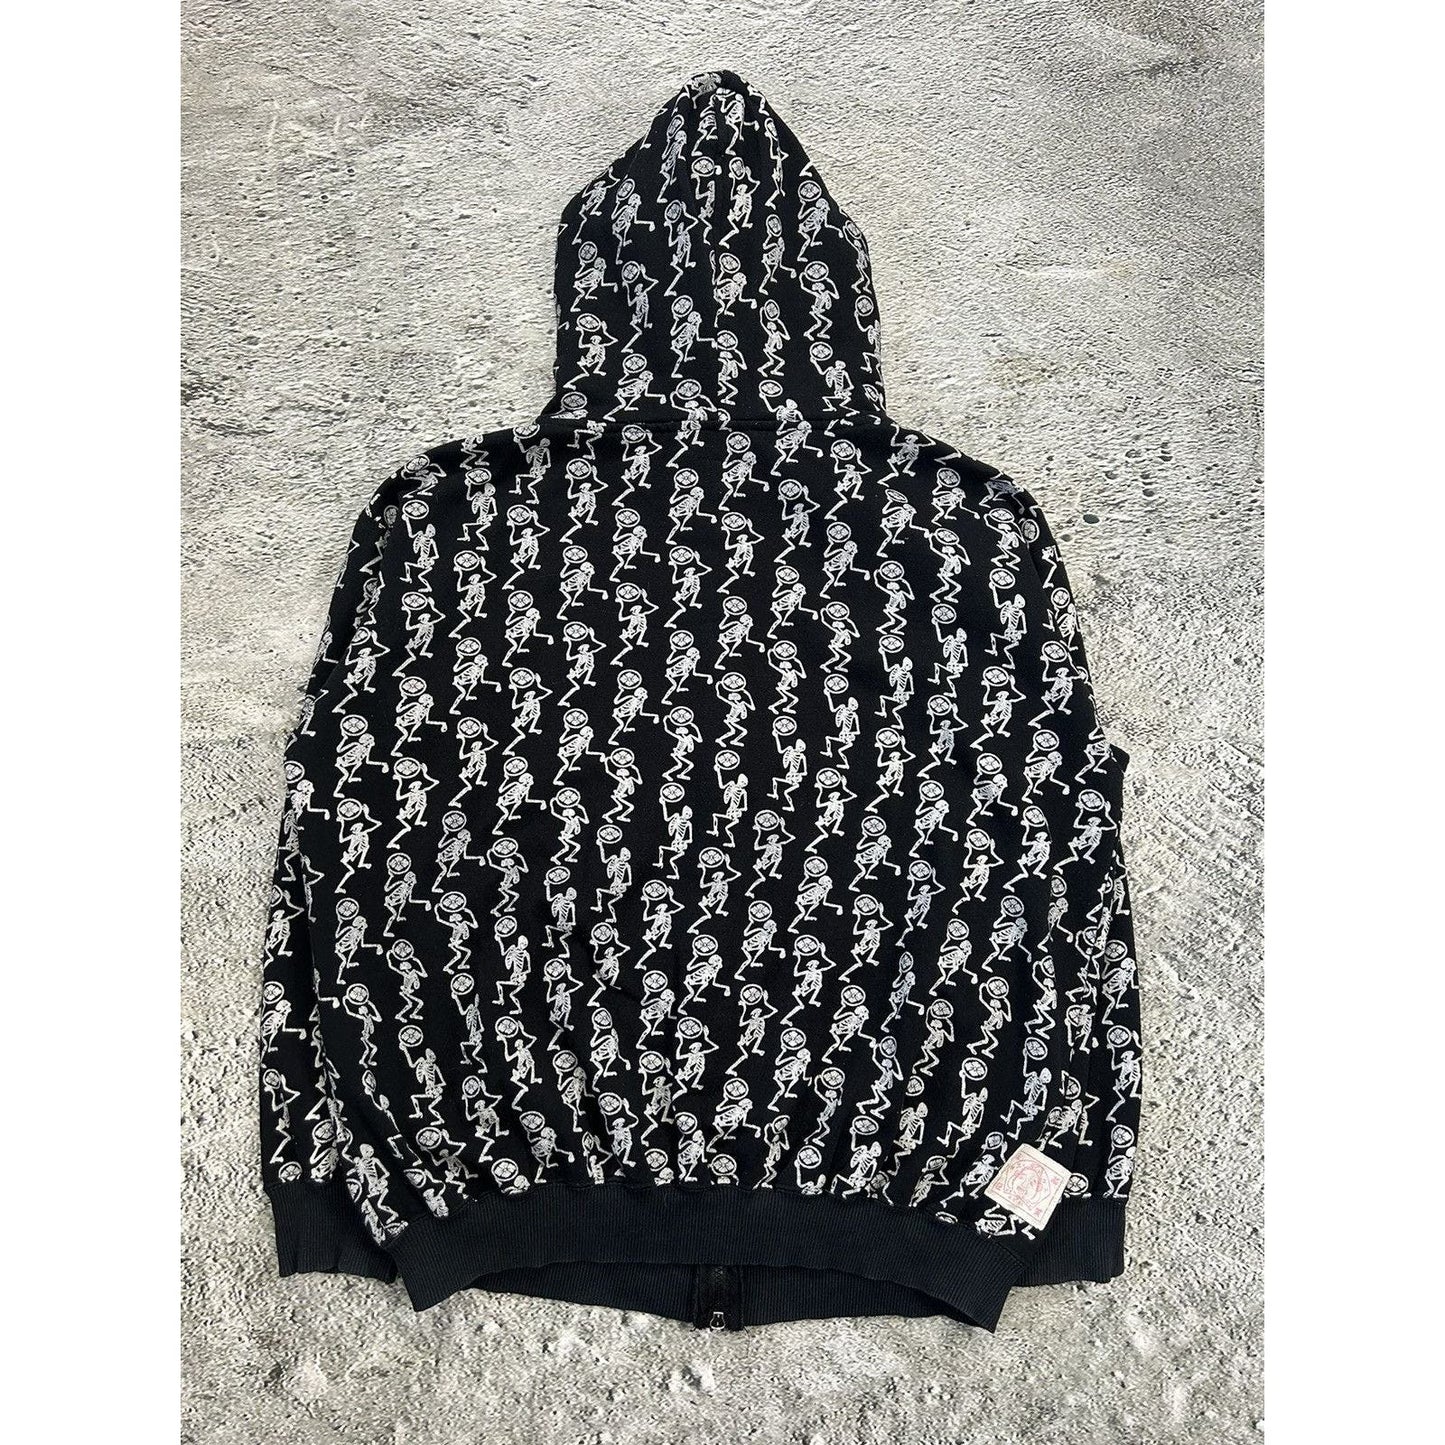 Evisu full zip hoodie vintage black big logo dancing skeletons